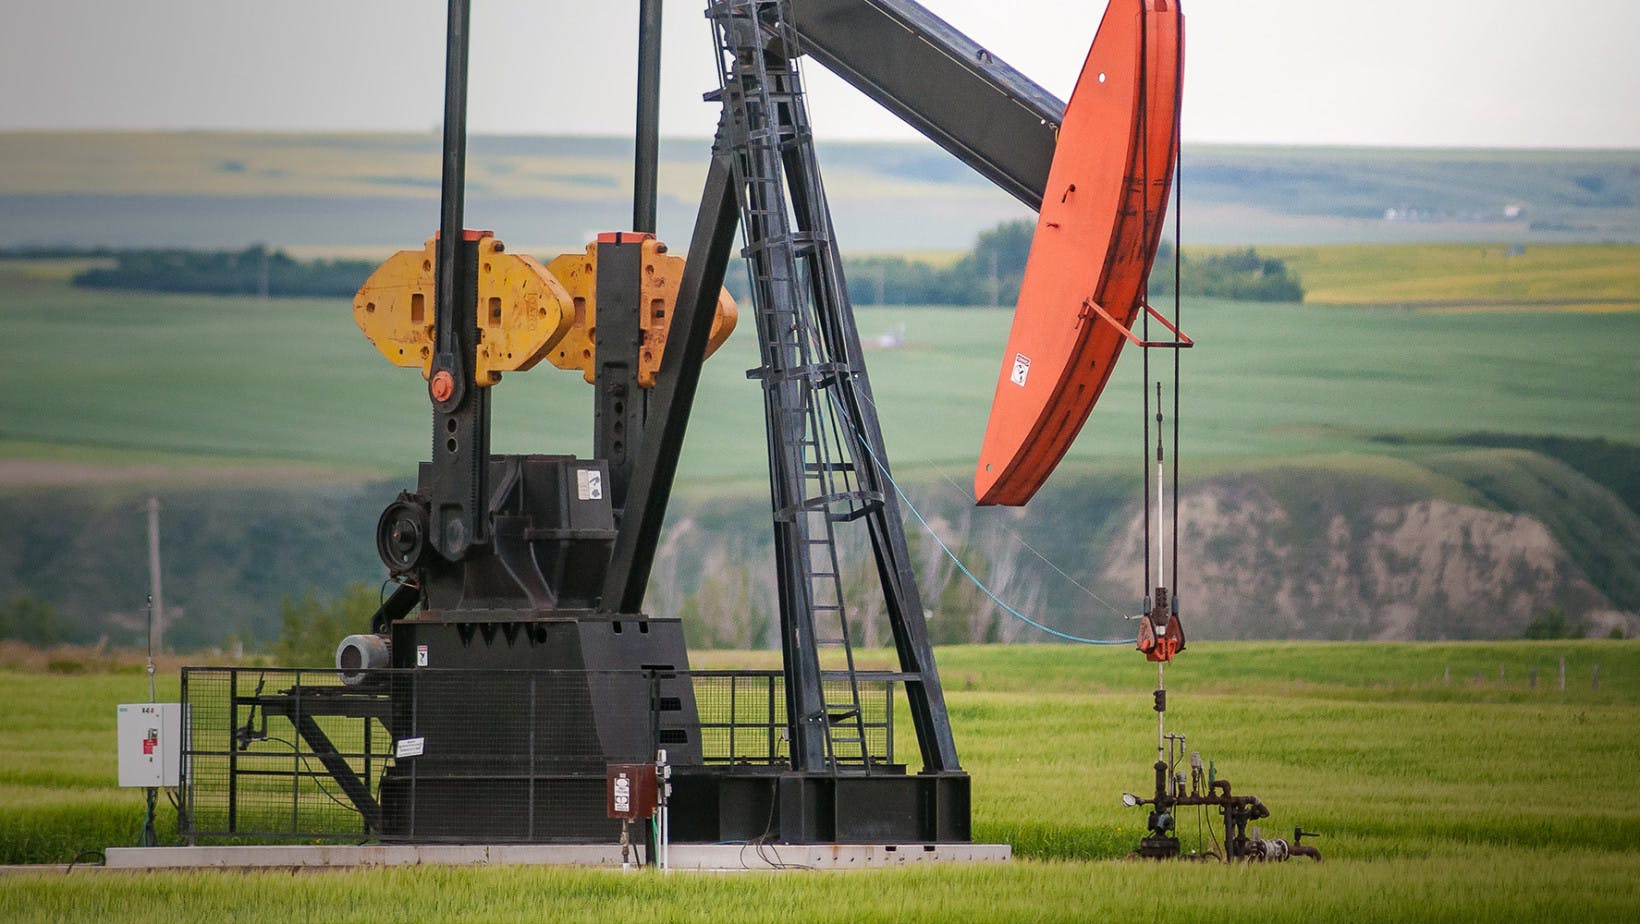 An oil well in a field